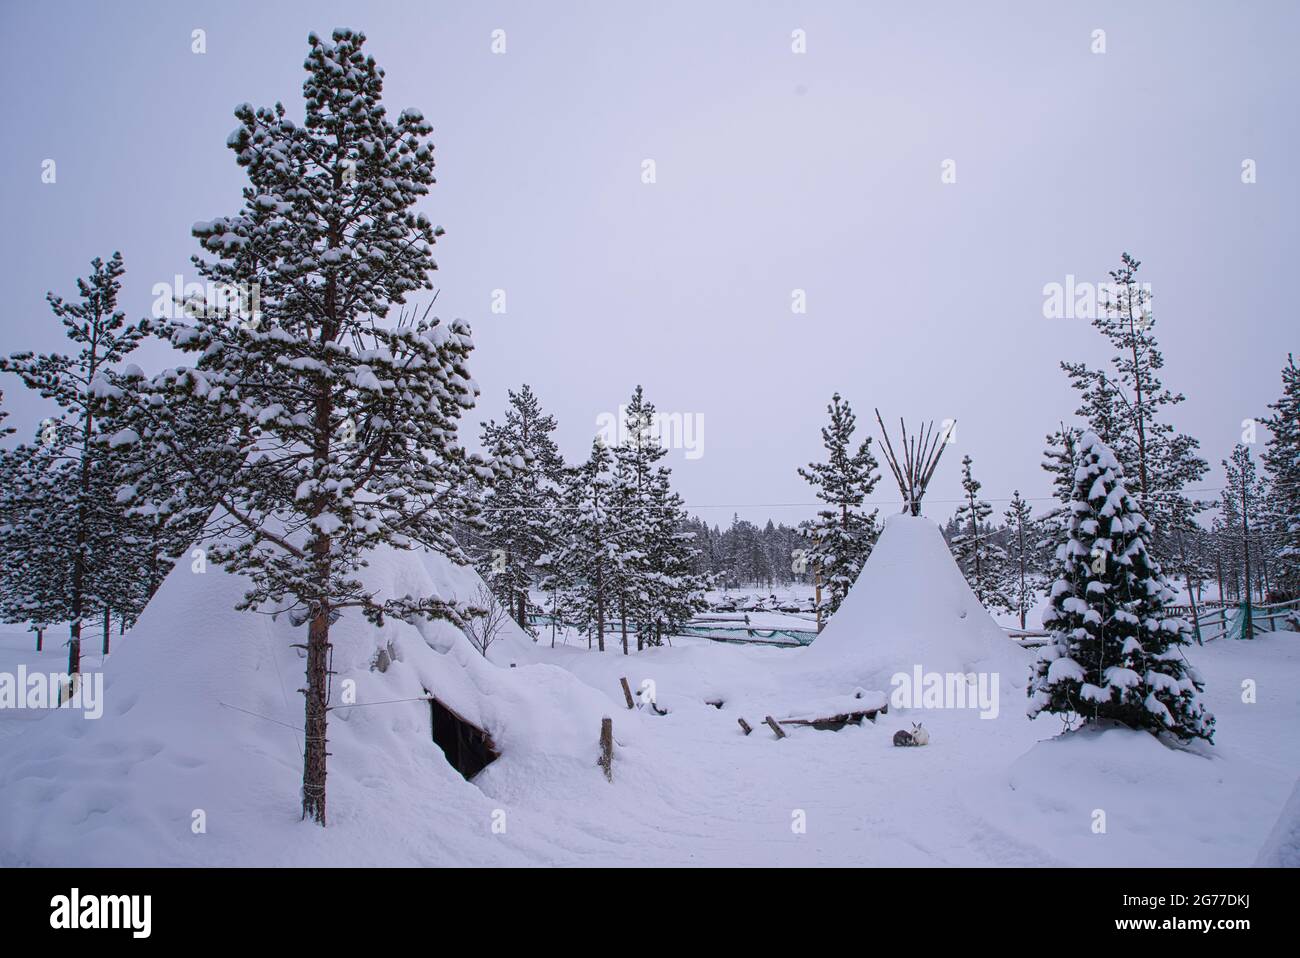 Tende tradizionali in pelle di renna (yurts lappish) nel villaggio di Sami. Le tende e gli alberi sono coperti di neve. Murmansk, Russia. marzo 2017. Foto Stock